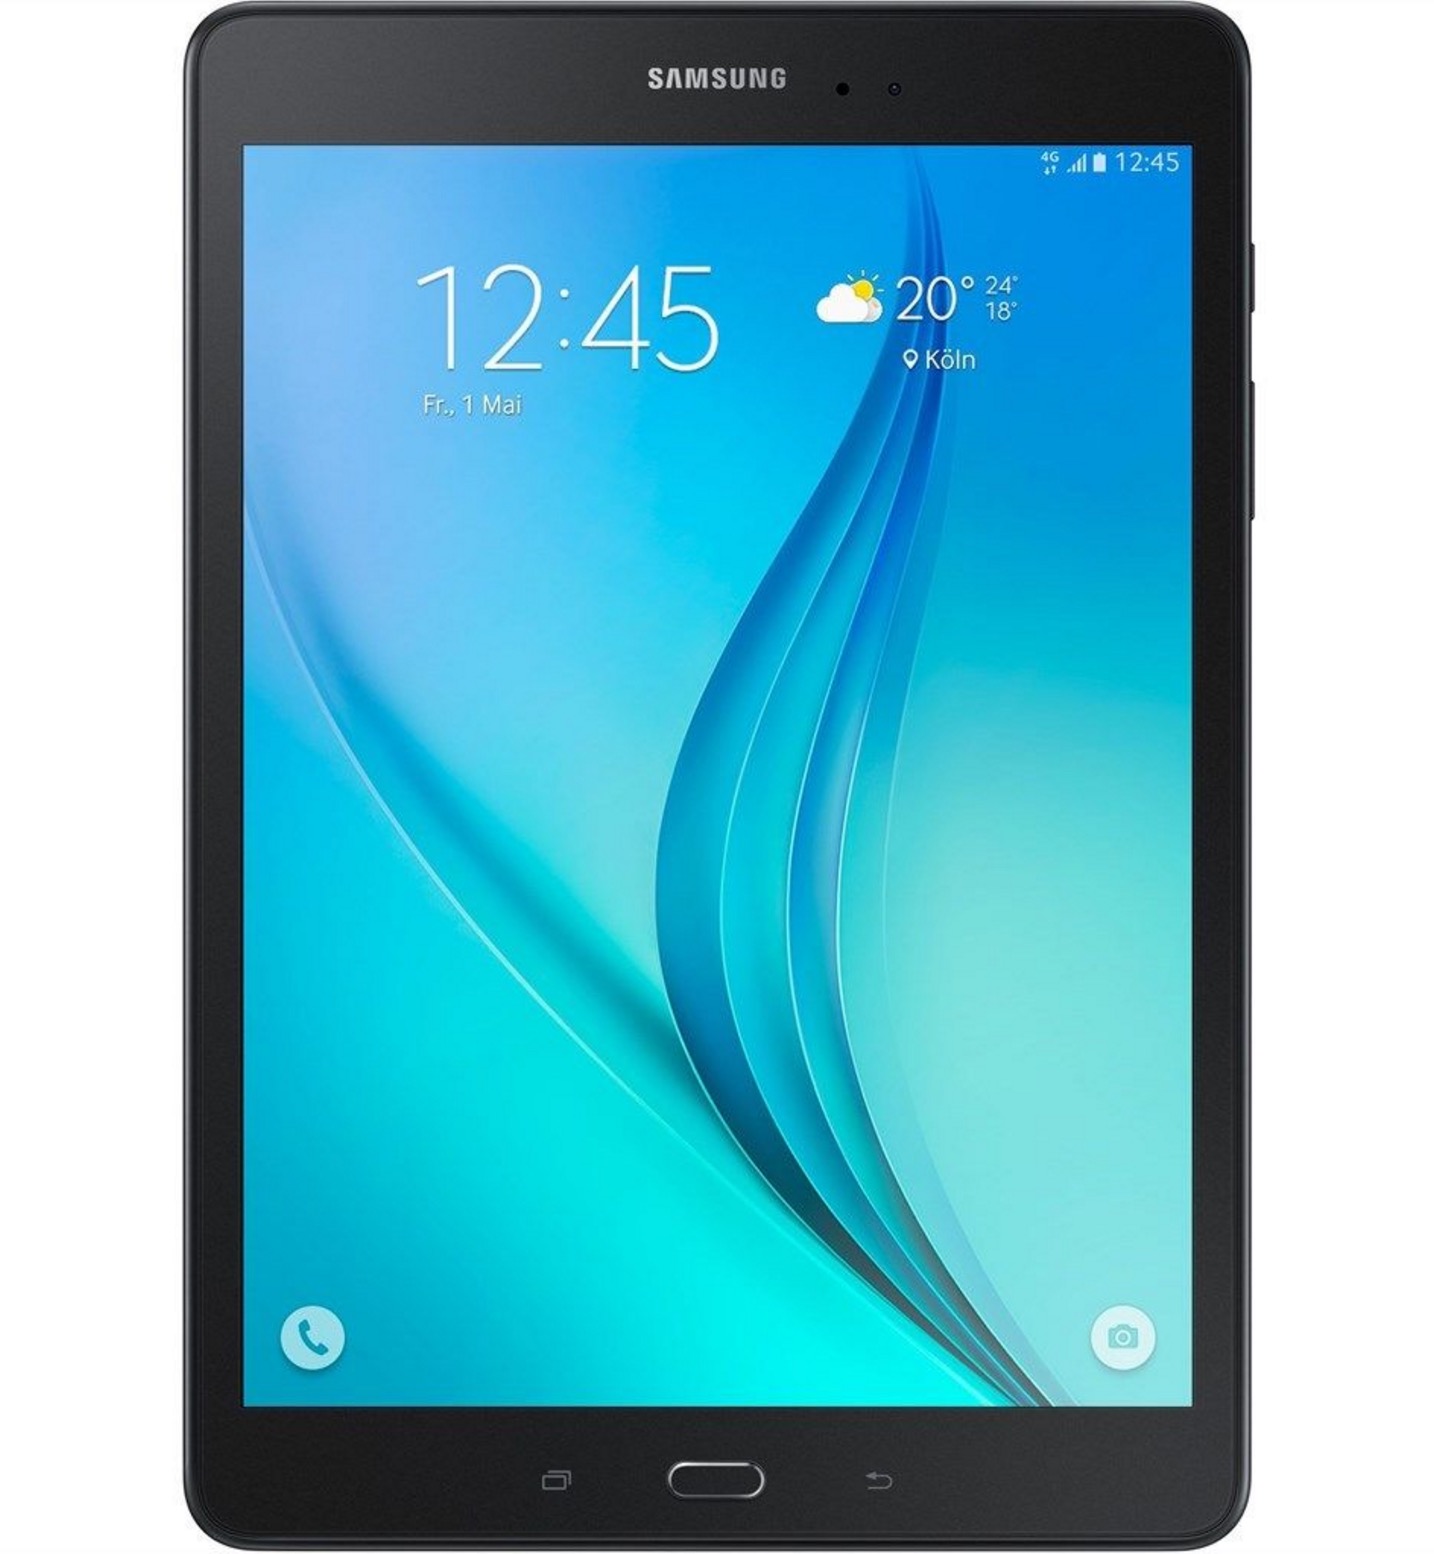 Samsung Galaxy Tab A 9.7″ T555 LTE 16GB als B-Ware in Schwarz für nur 159,90 Euro inkl. Versandl